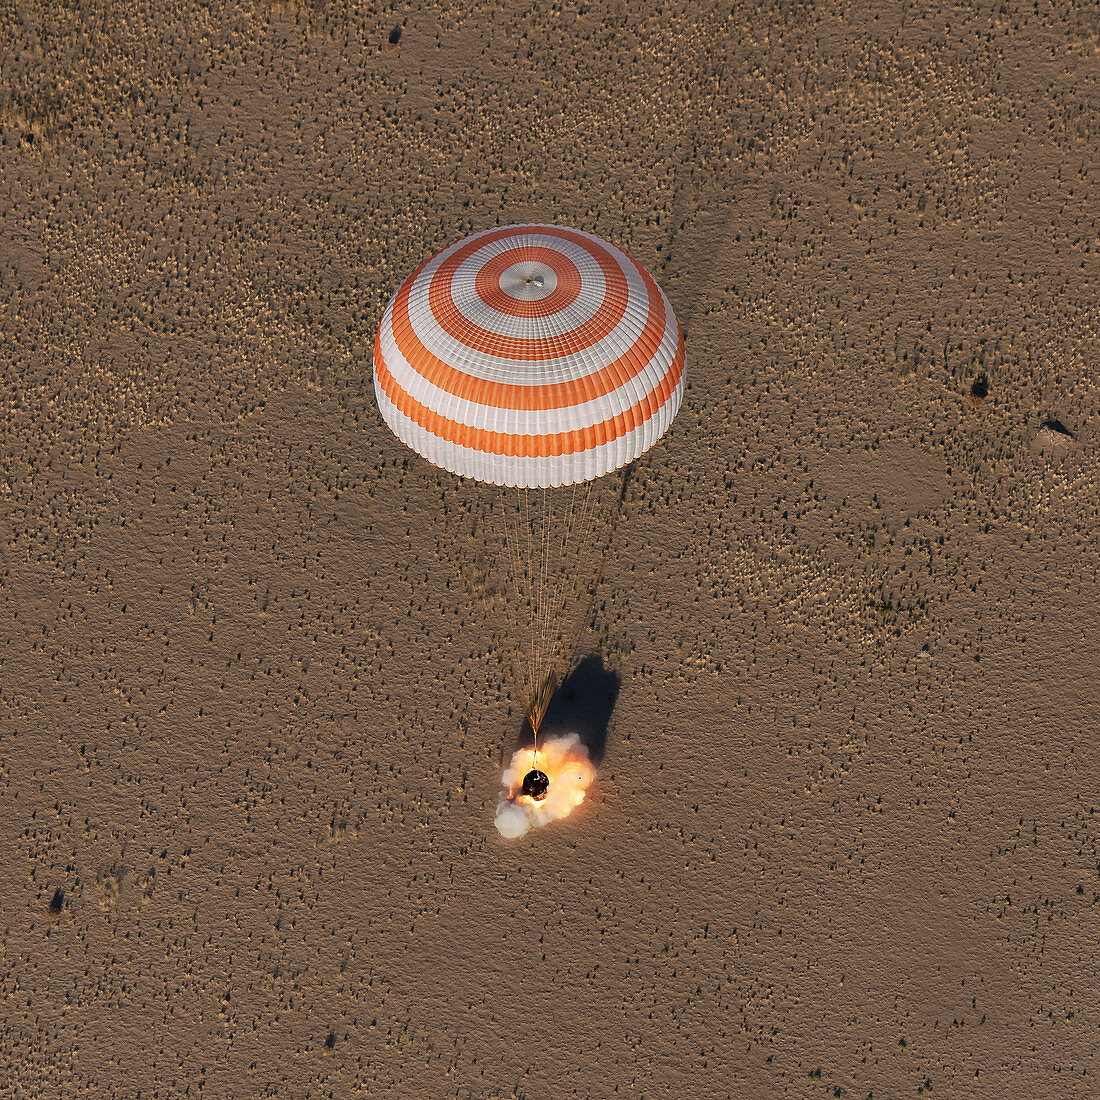 Soyuz MS-08 capsule landing by parachute,2018